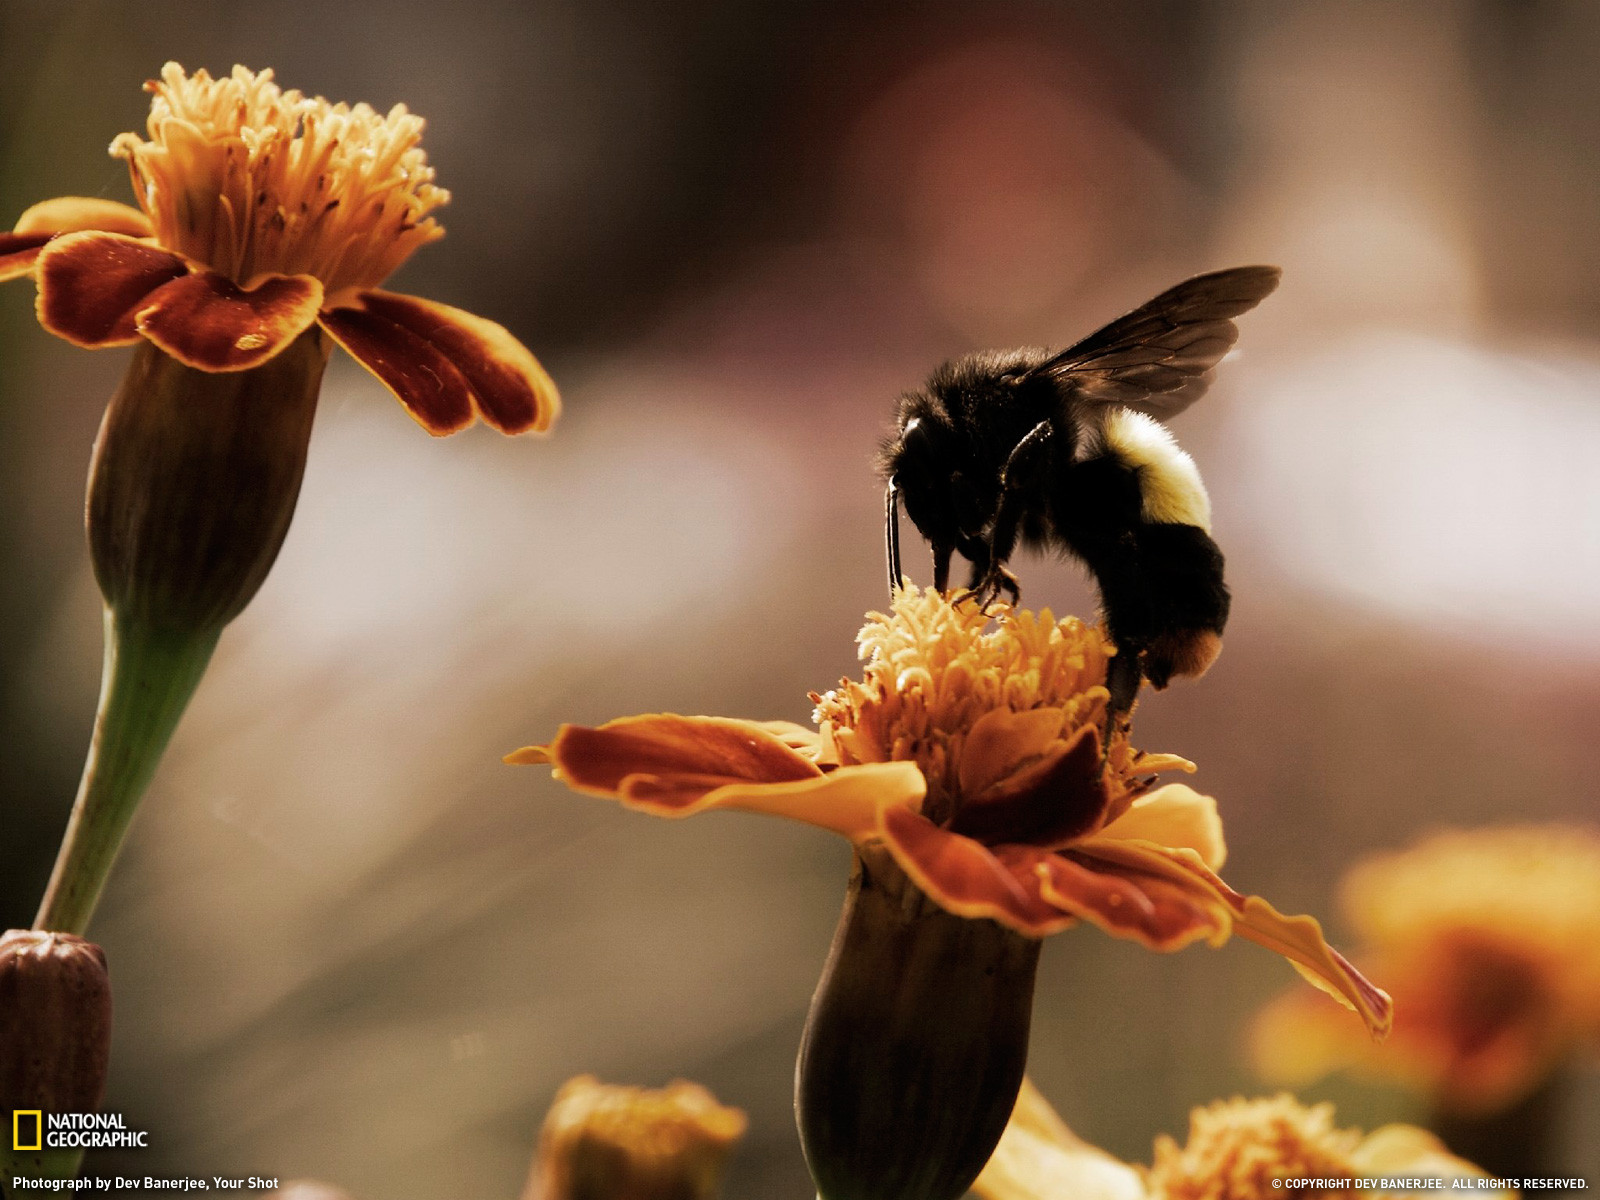 Handy-Wallpaper Biene, Insekten, Tiere kostenlos herunterladen.